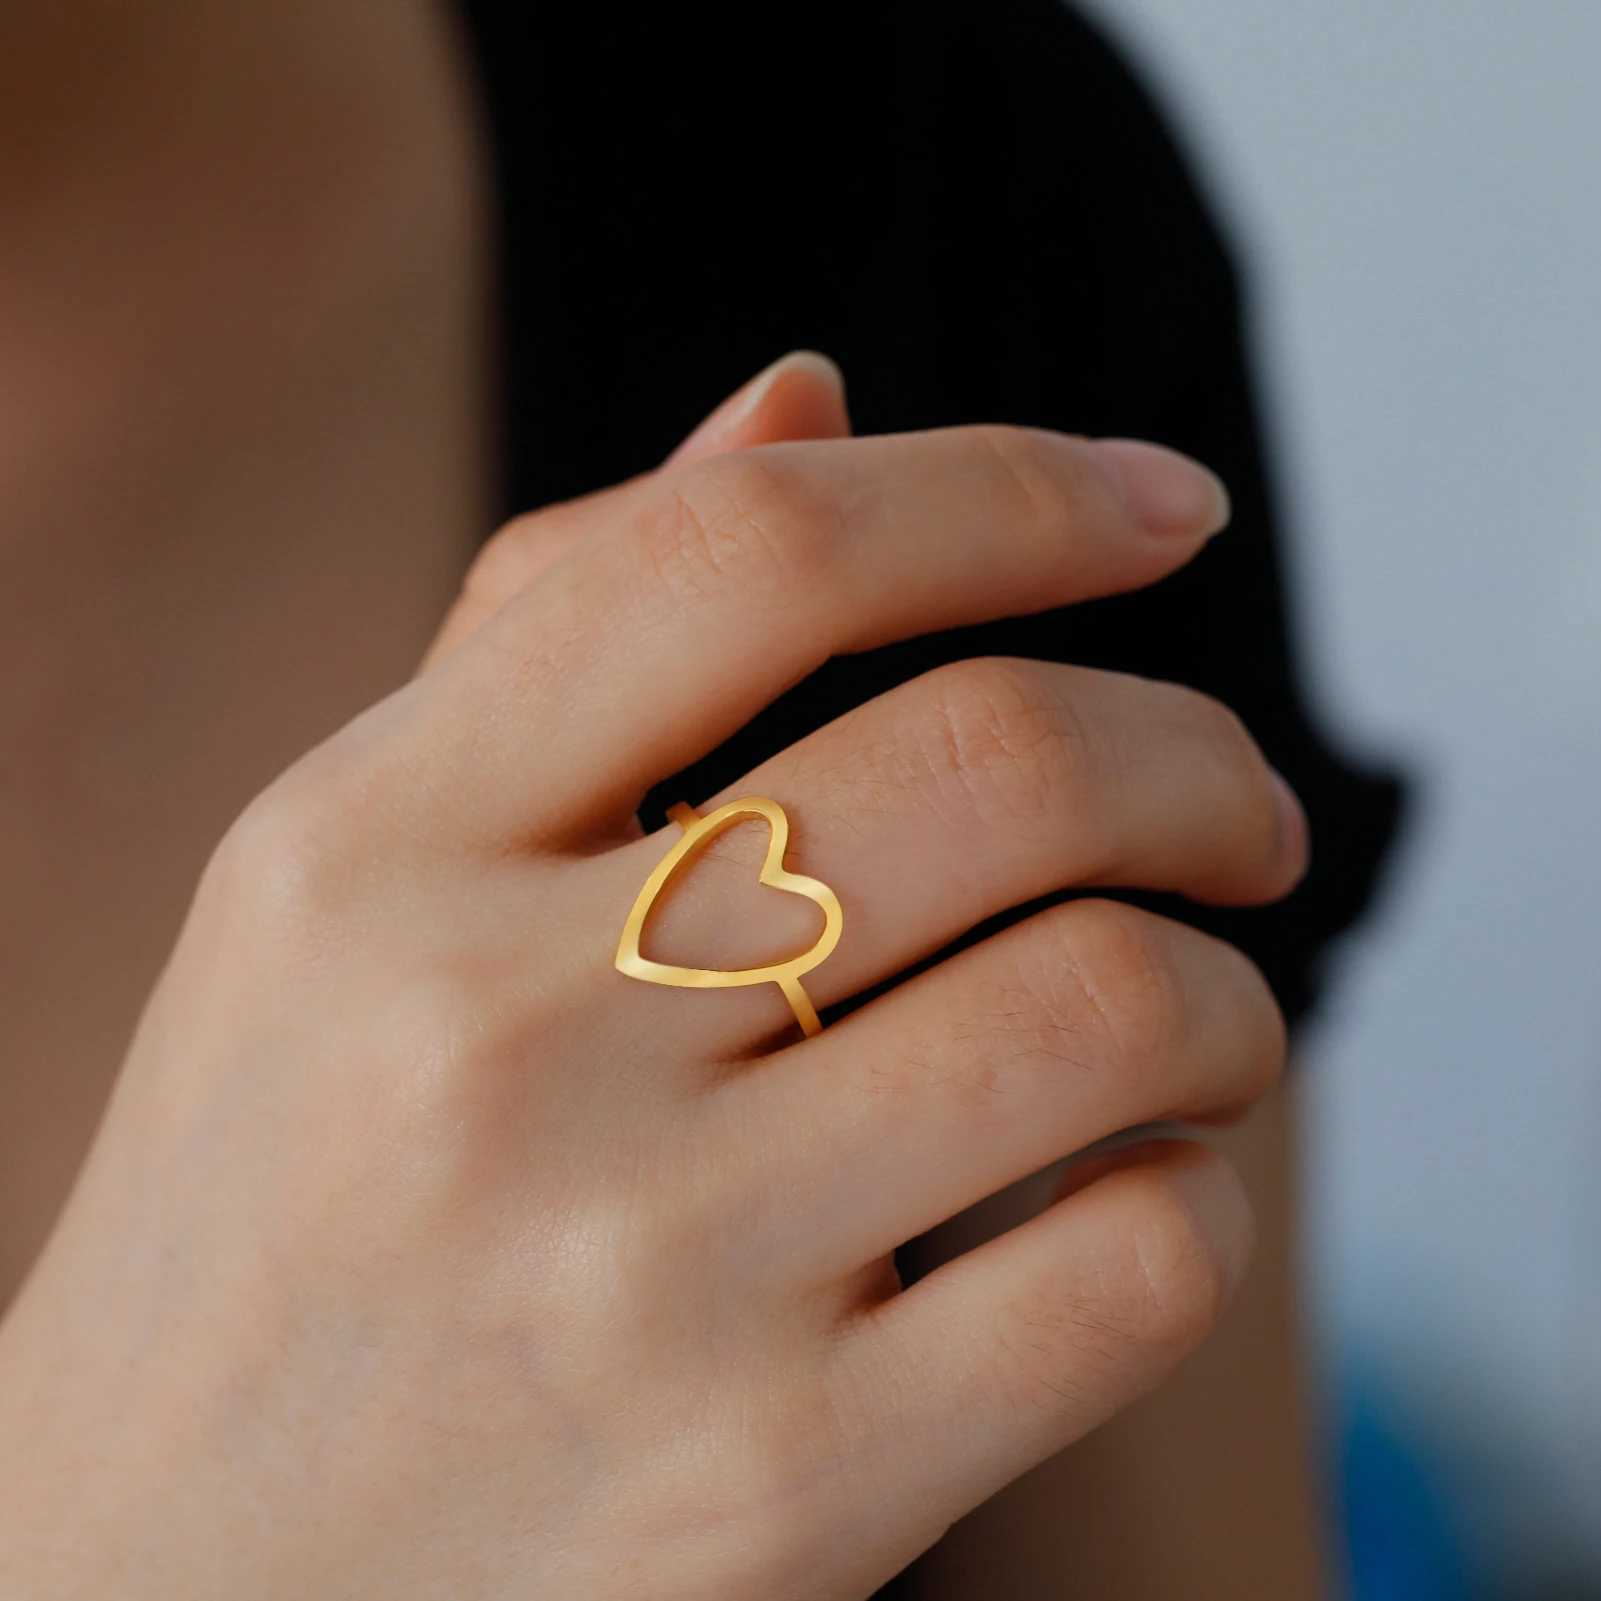 Bagues de mariage skyrim Nouveau dans les femmes Big Heart anneau en acier inoxydable or couleur minimaliste ouverts anneaux bijoux Valentin Gift Wholesale